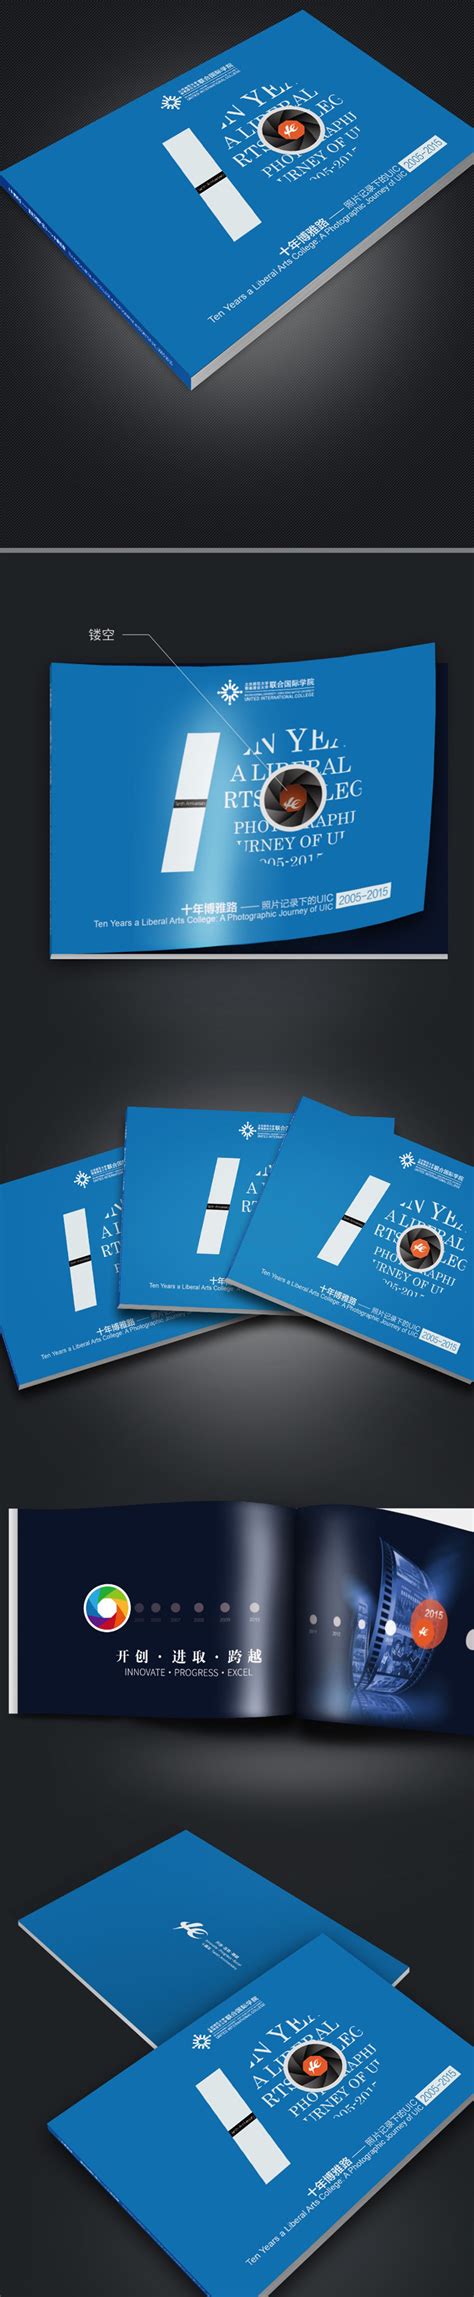 句容精装册设计|句容纪念册设计制作|纪念册印刷|毕业纪念册设计|企业纪念册设计公司